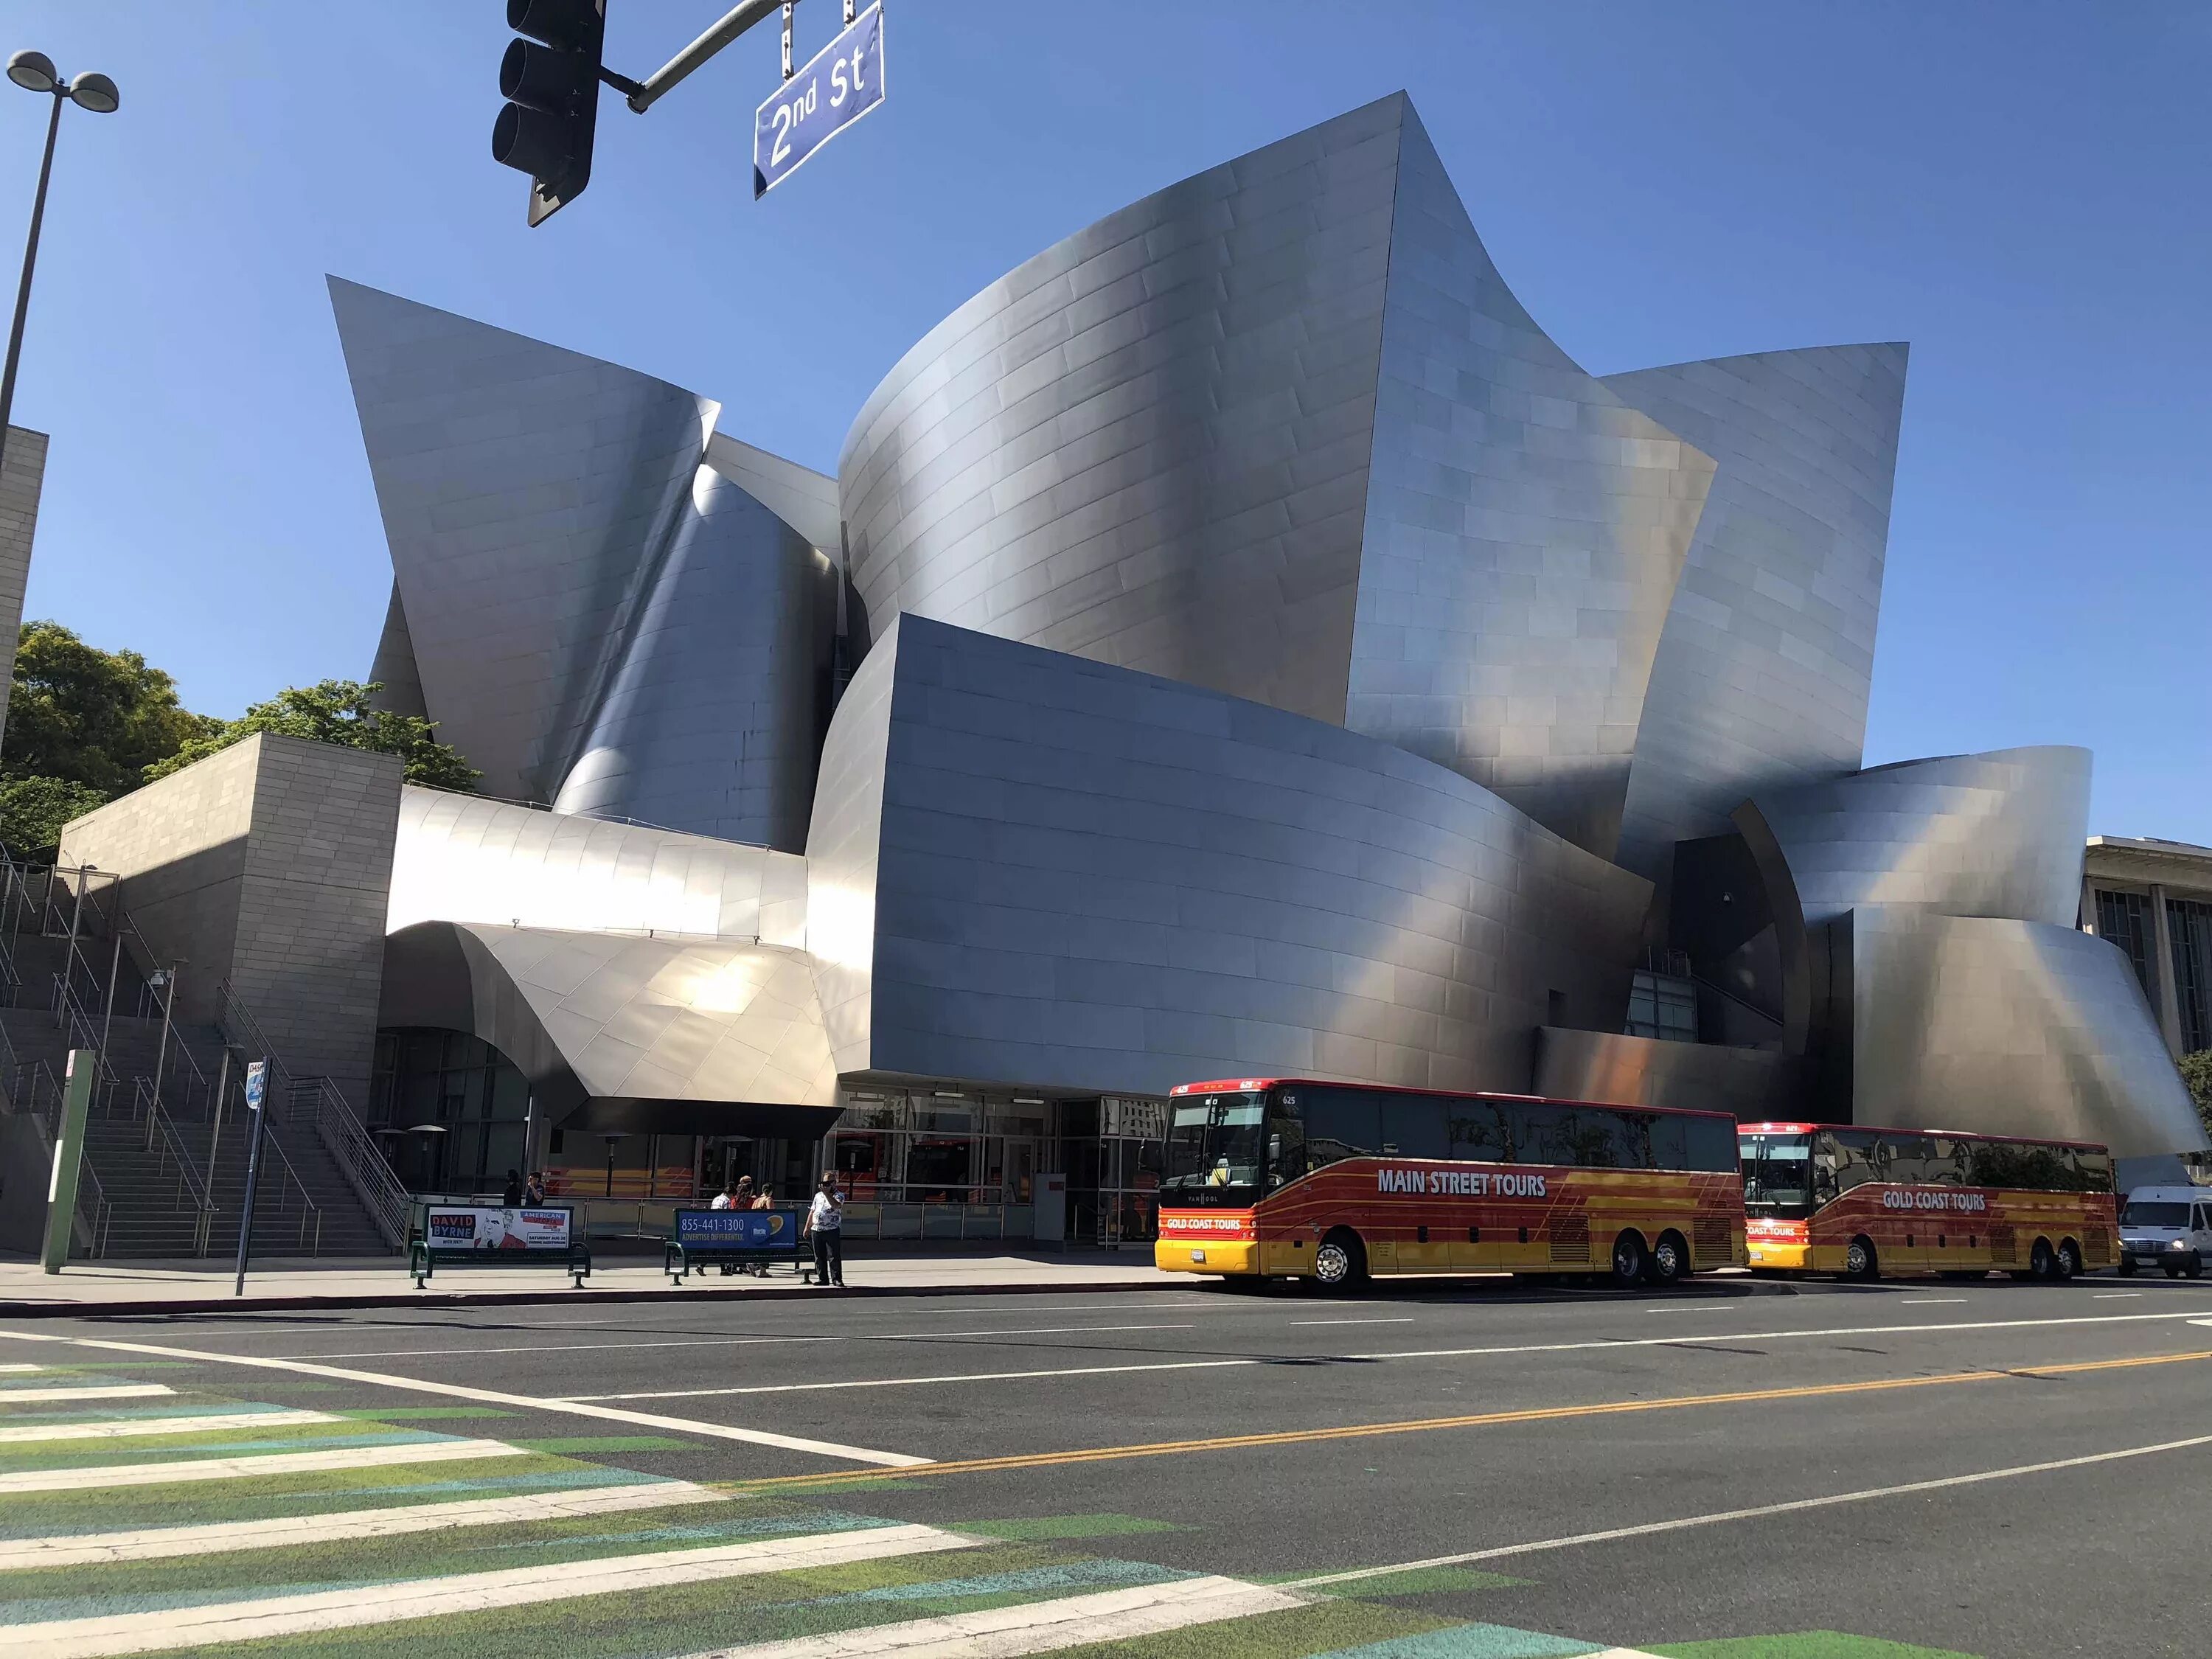 Концертный зал «Дисней» в Лос-Анджелес. Концертный зал Уолта Диснея в Лос-Анджелесе. Фрэнк Гери концертный зал Уолта Диснея. Концертный зал Уолта Диснея в Лос-Анджелесе архитектура.